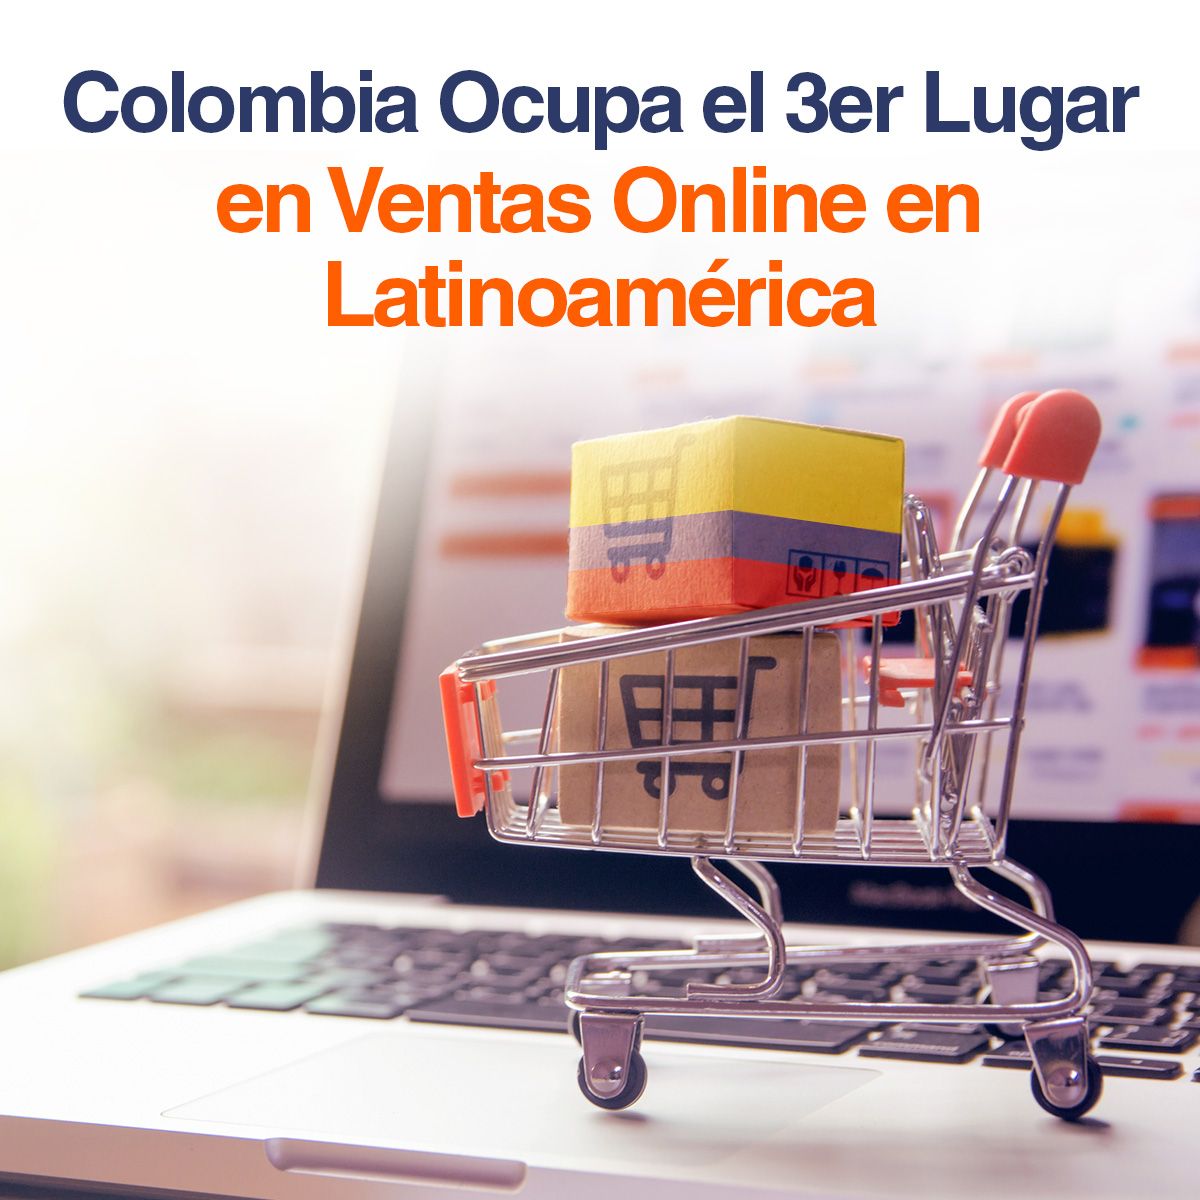 Colombia Ocupa el 3er Lugar en Ventas Online en Latinoamérica